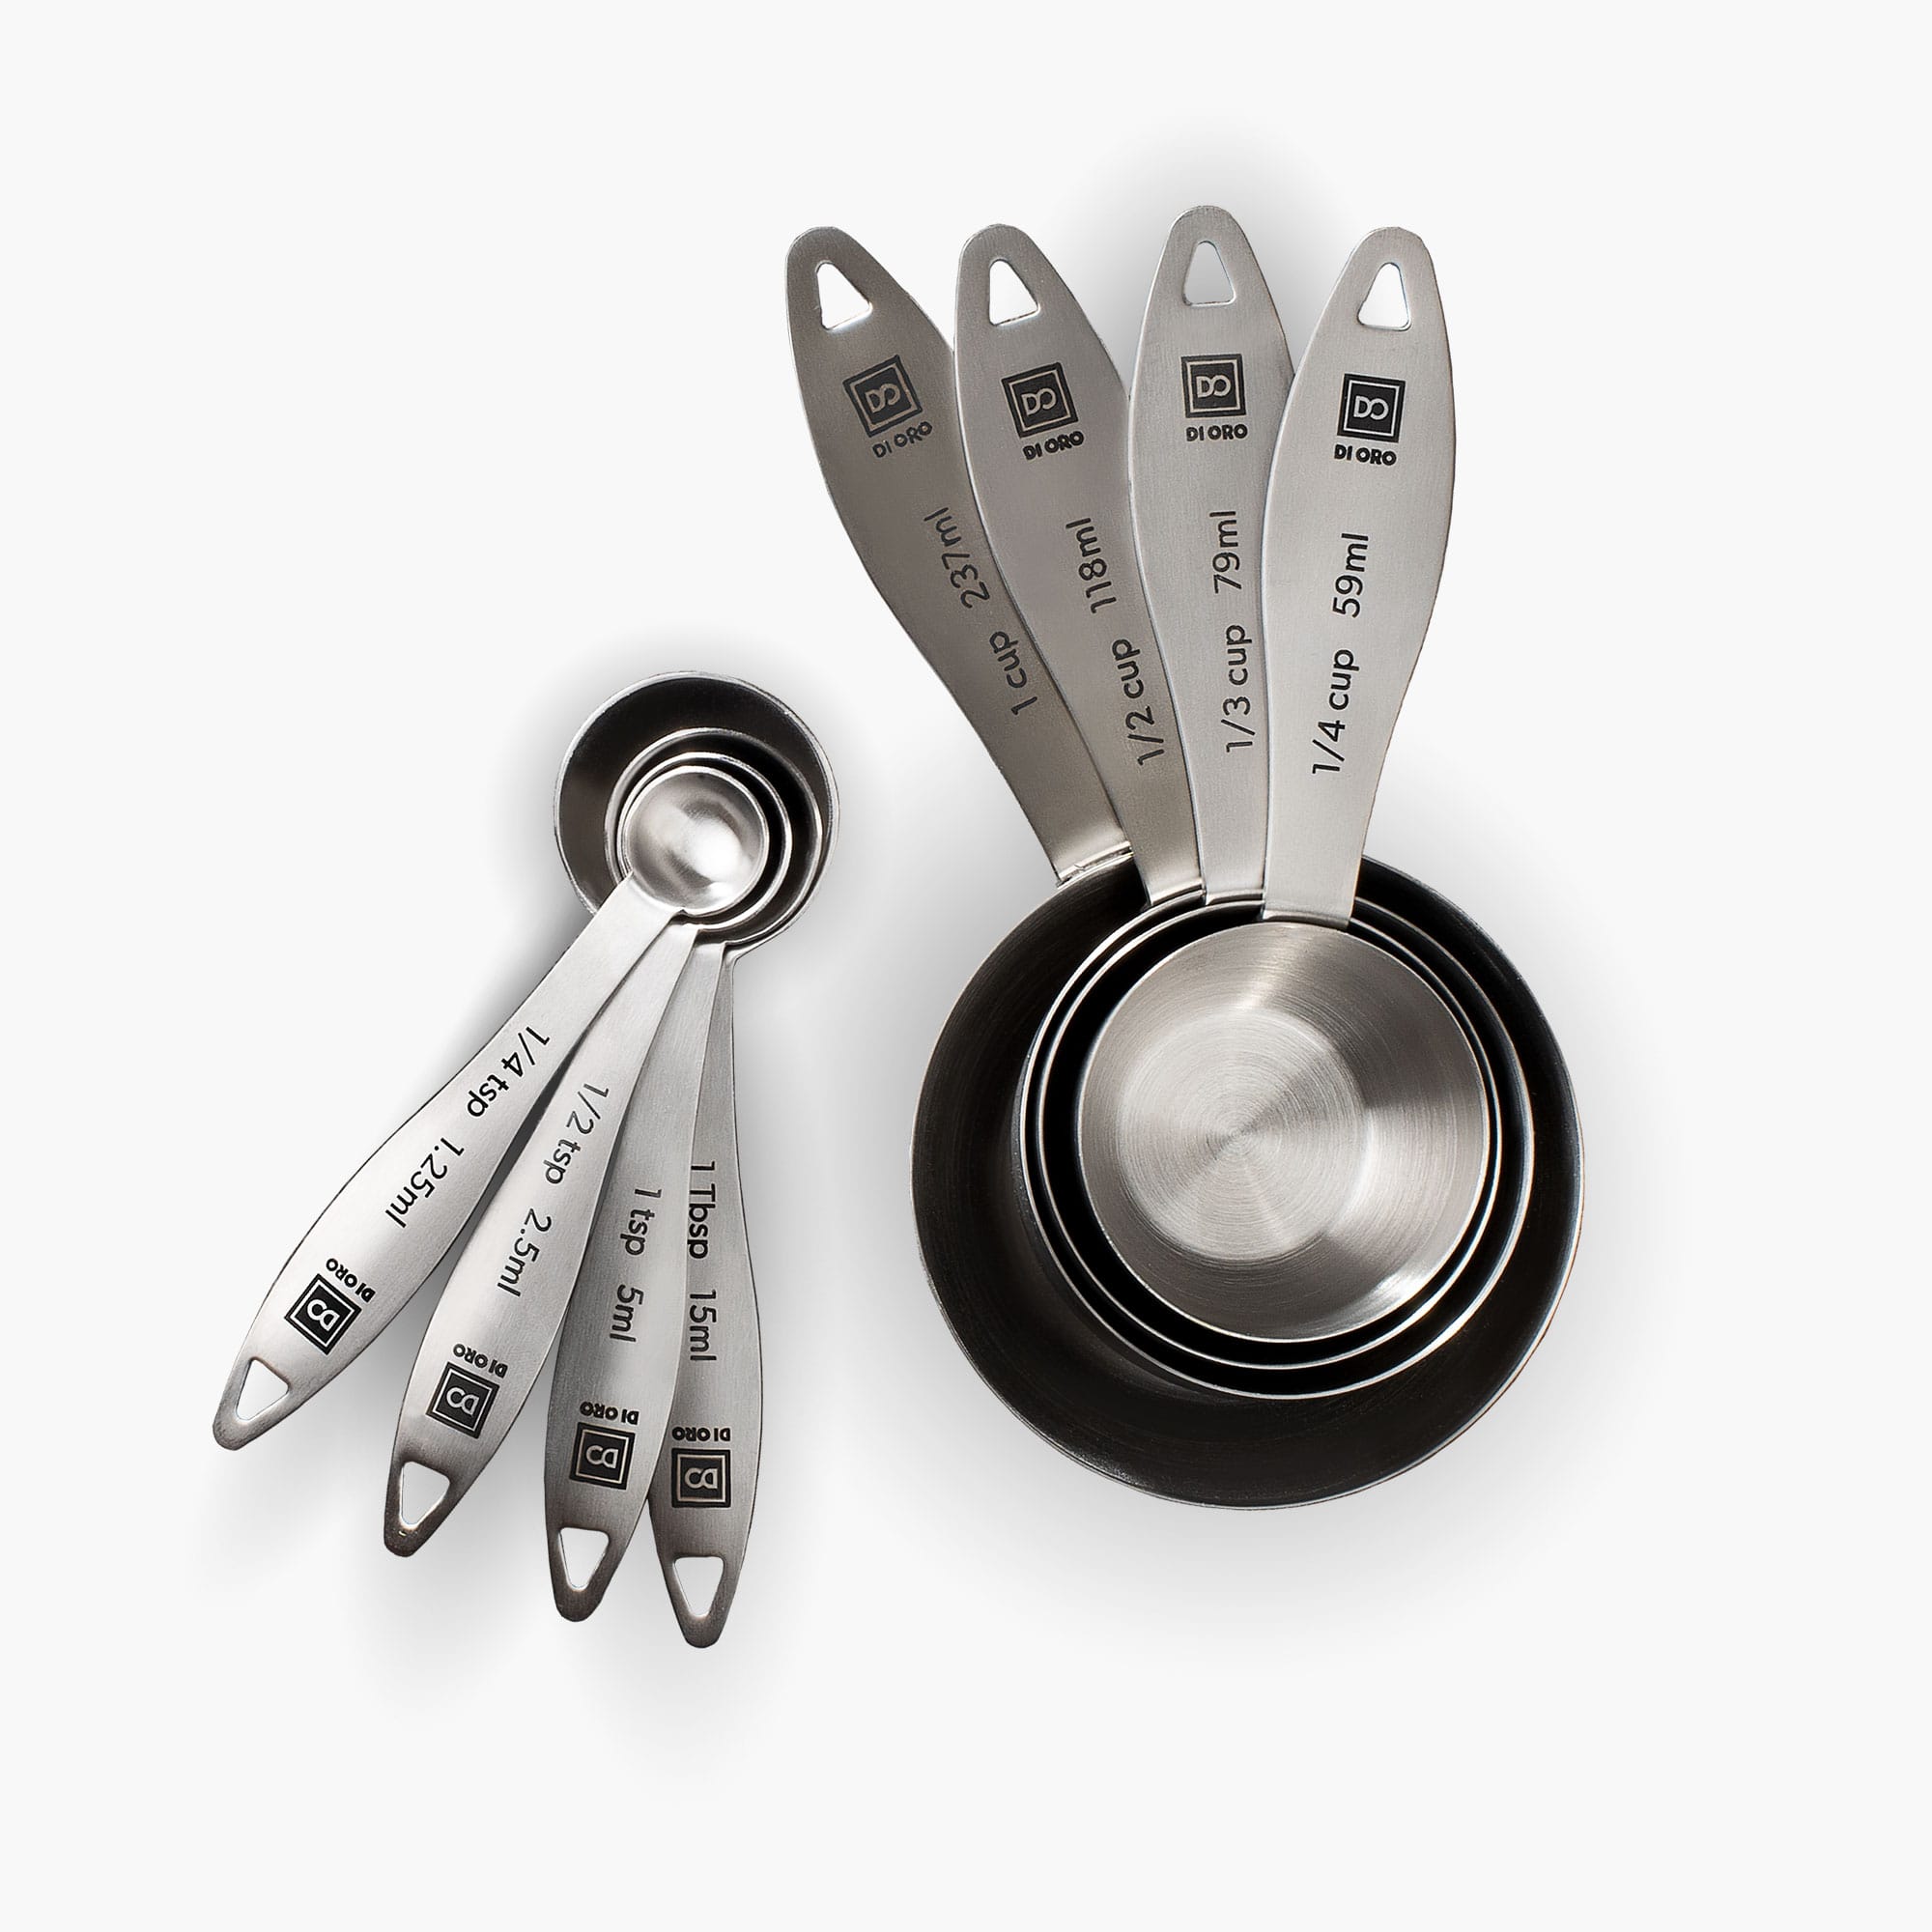 Measuring Spoons:18/8 Stainless Steel Measuring Spoons Set Of 9 Piece: 1/16  Tsp, 1/8 Tsp, 1/4 Tsp, 1/3 Tsp, 1/2 Tsp, 3/4 Tsp, 1 Tsp, 1/2 Tbsp & 1 Tbsp